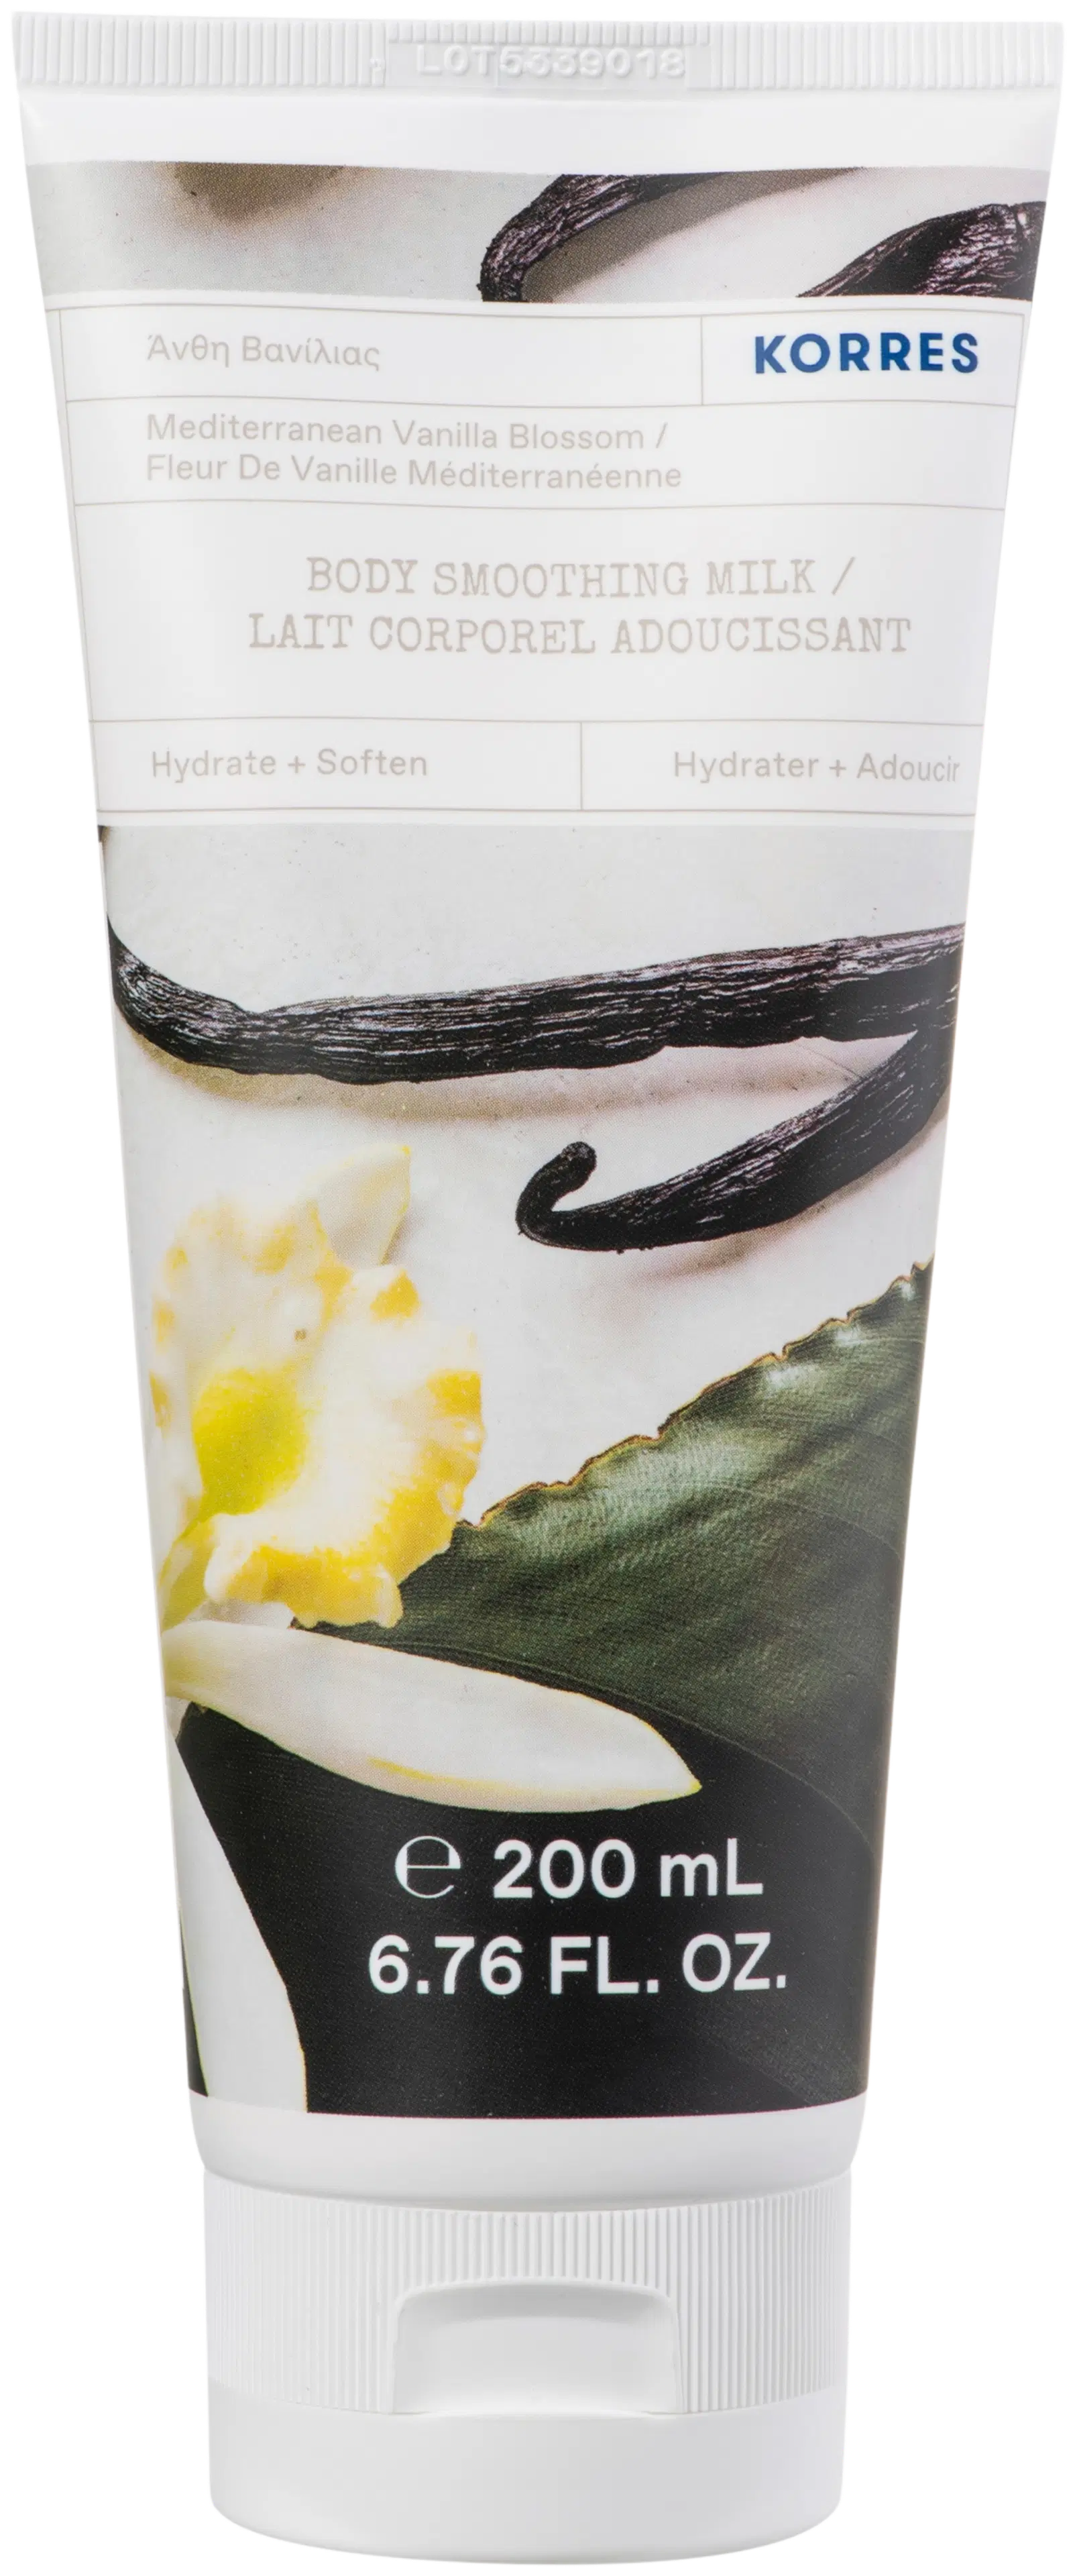 KORRES Mediterranean Vanilla Blossom Body Milk vartalovoide 200 ml